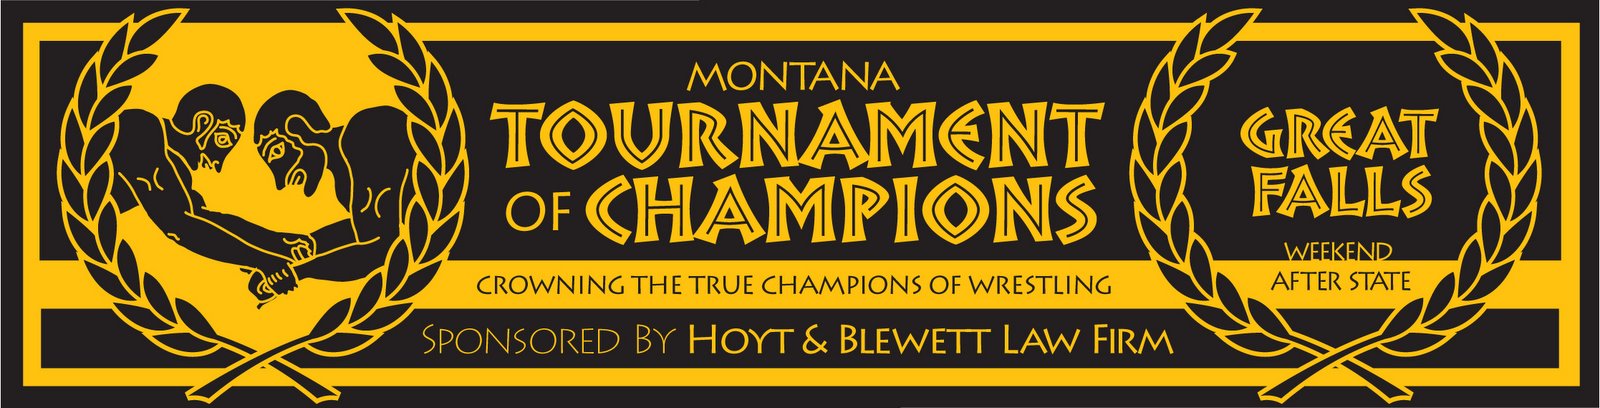 Montana Wrestling